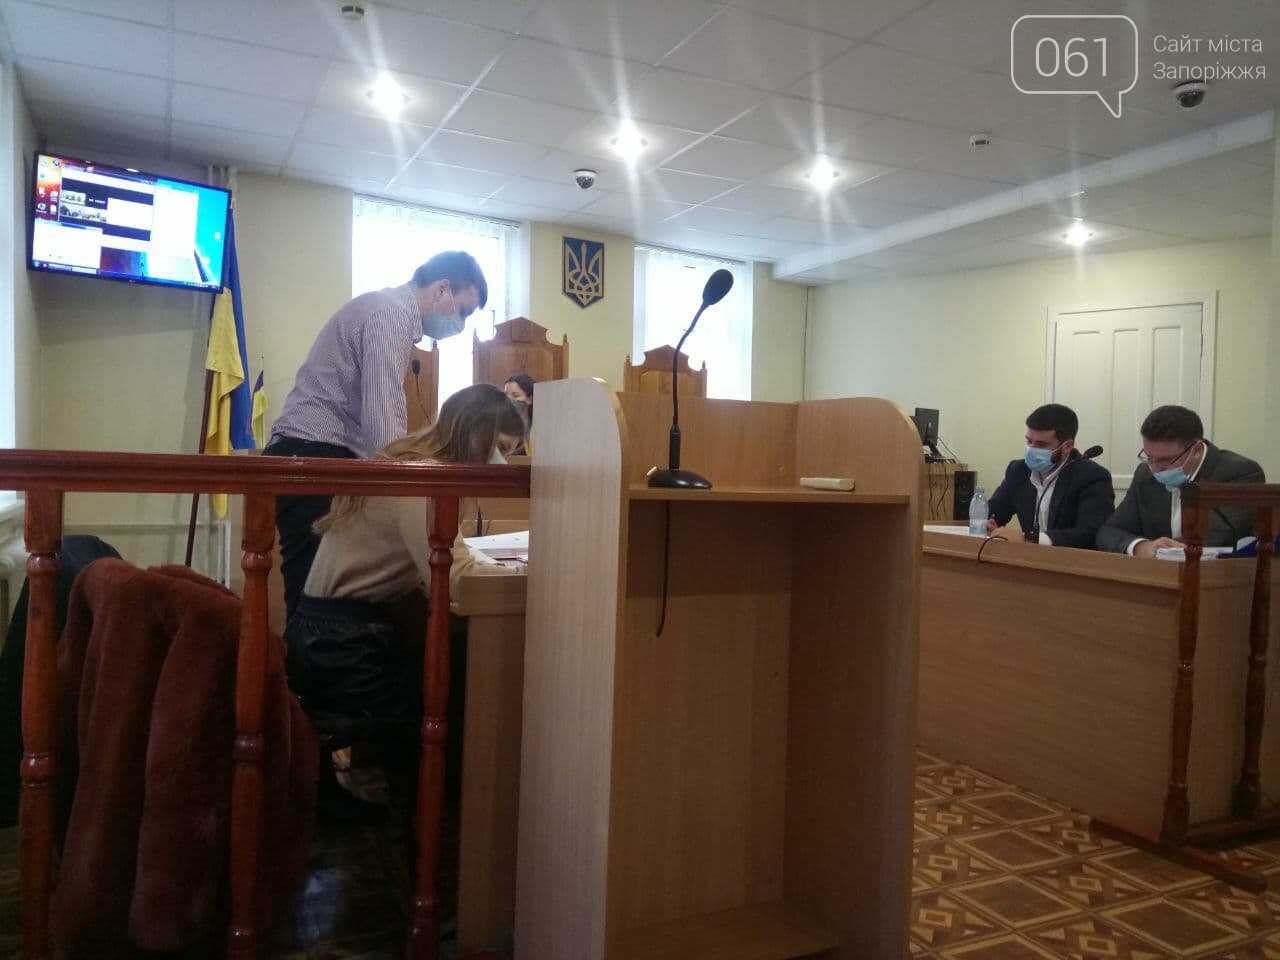 "Деньги на модернизацию направили, но ее выполнение не проконтролировали": в суде снова пытаются вернуть ЗТМК государству, фото-1